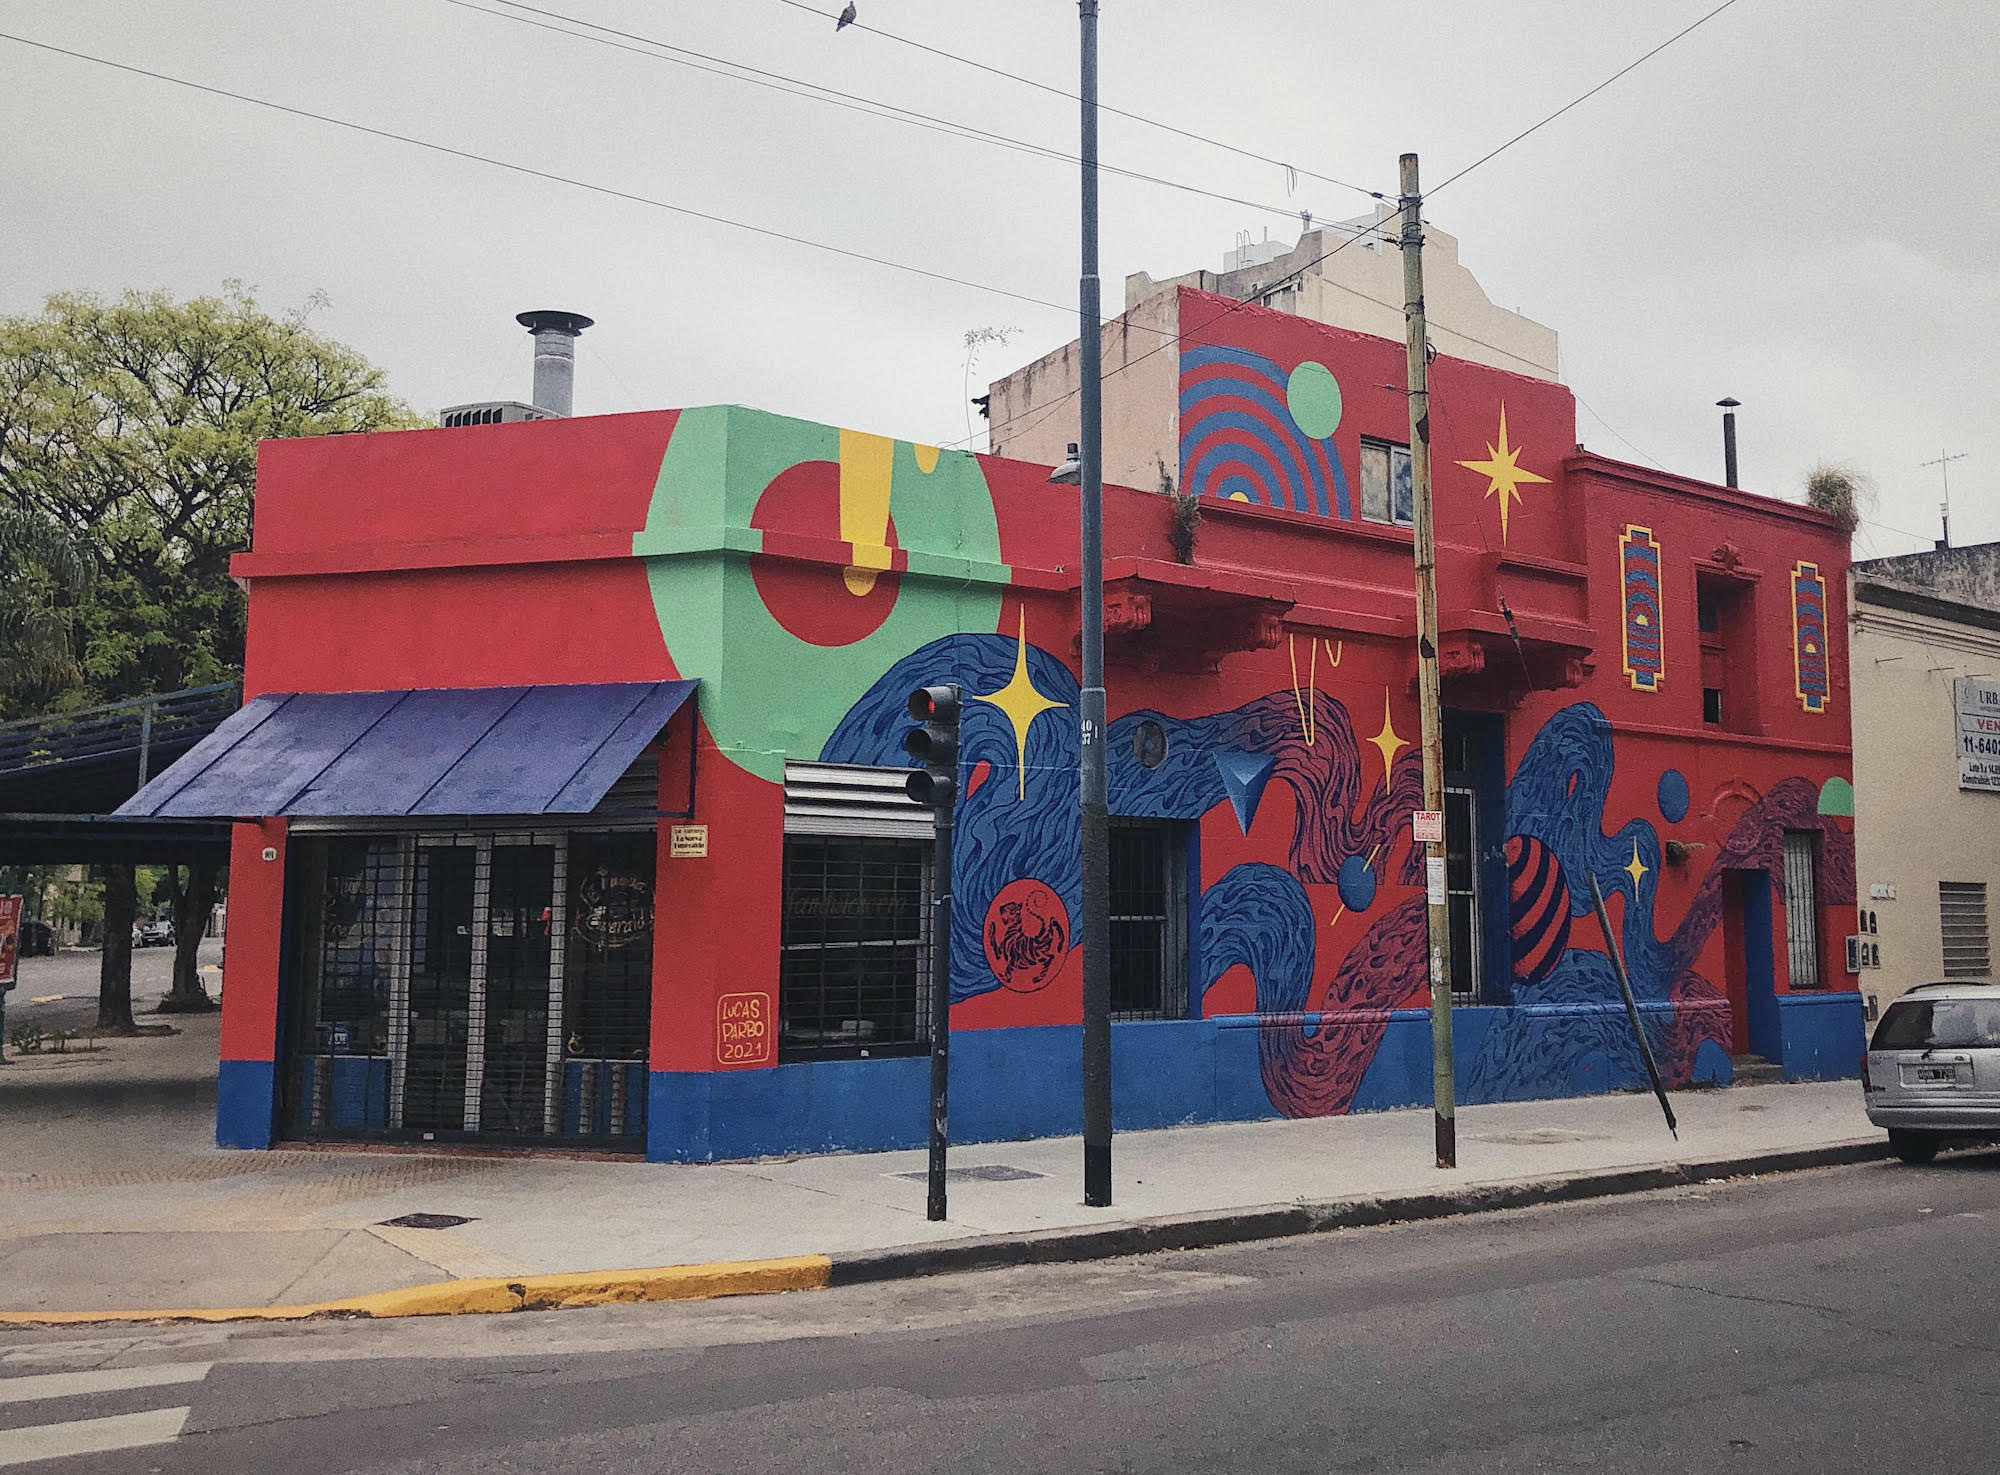 Novo Mural de PARBO em Buenos Aires Artes & contextos unnamed 93